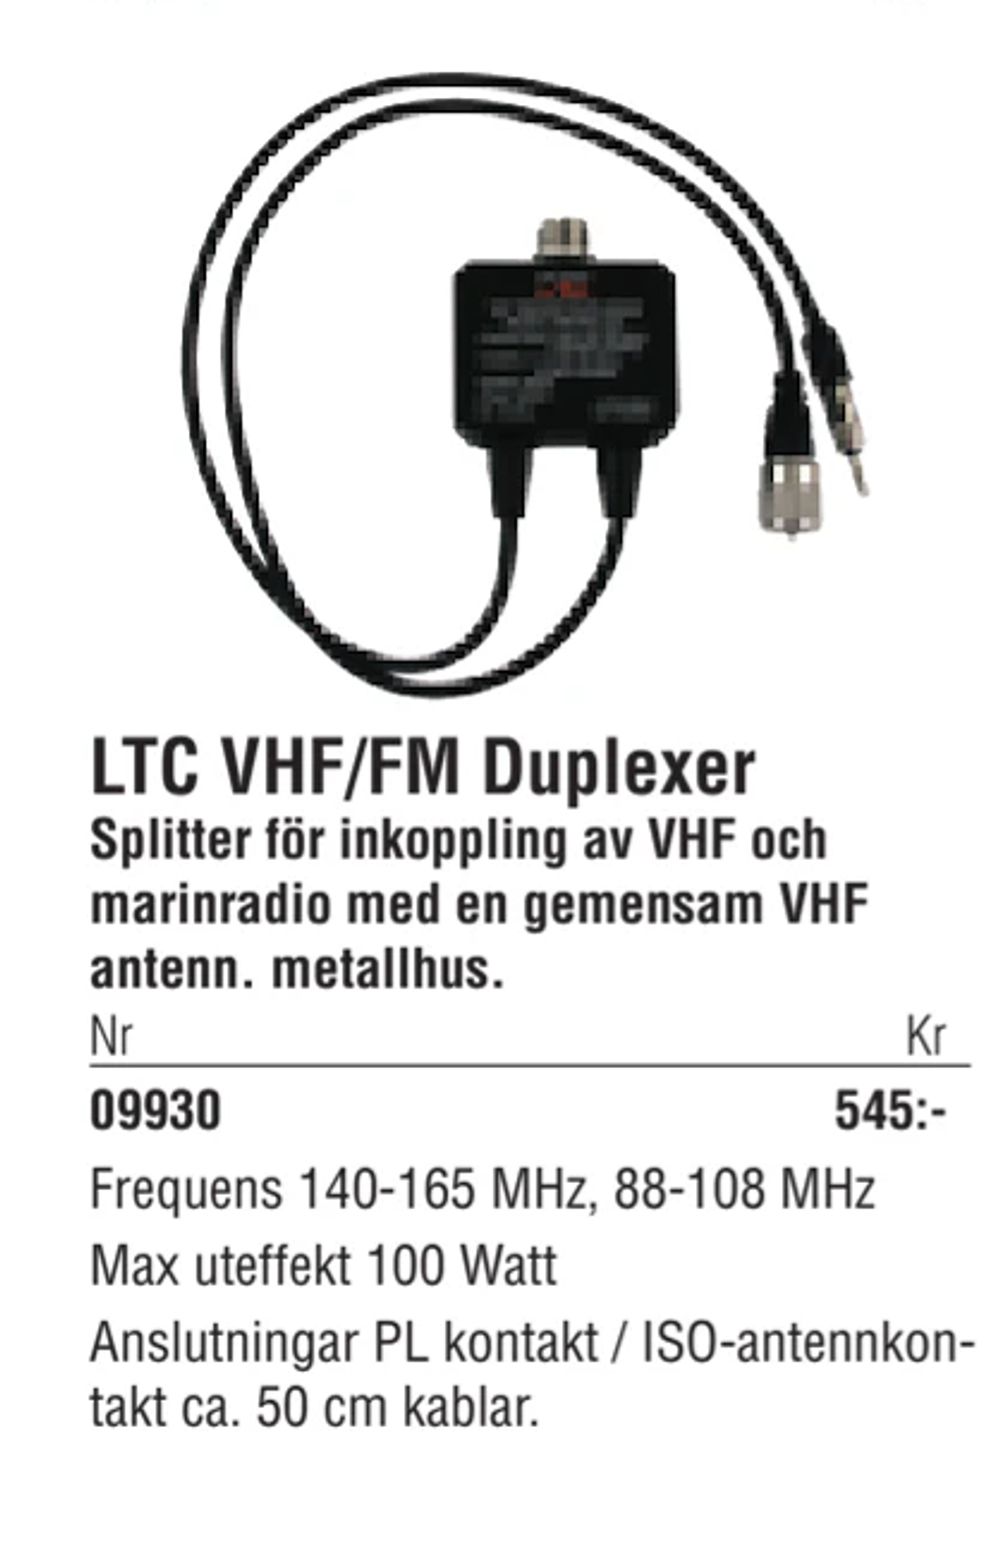 Erbjudanden på LTC VHF/FM Duplexer från Erlandsons Brygga för 545 kr